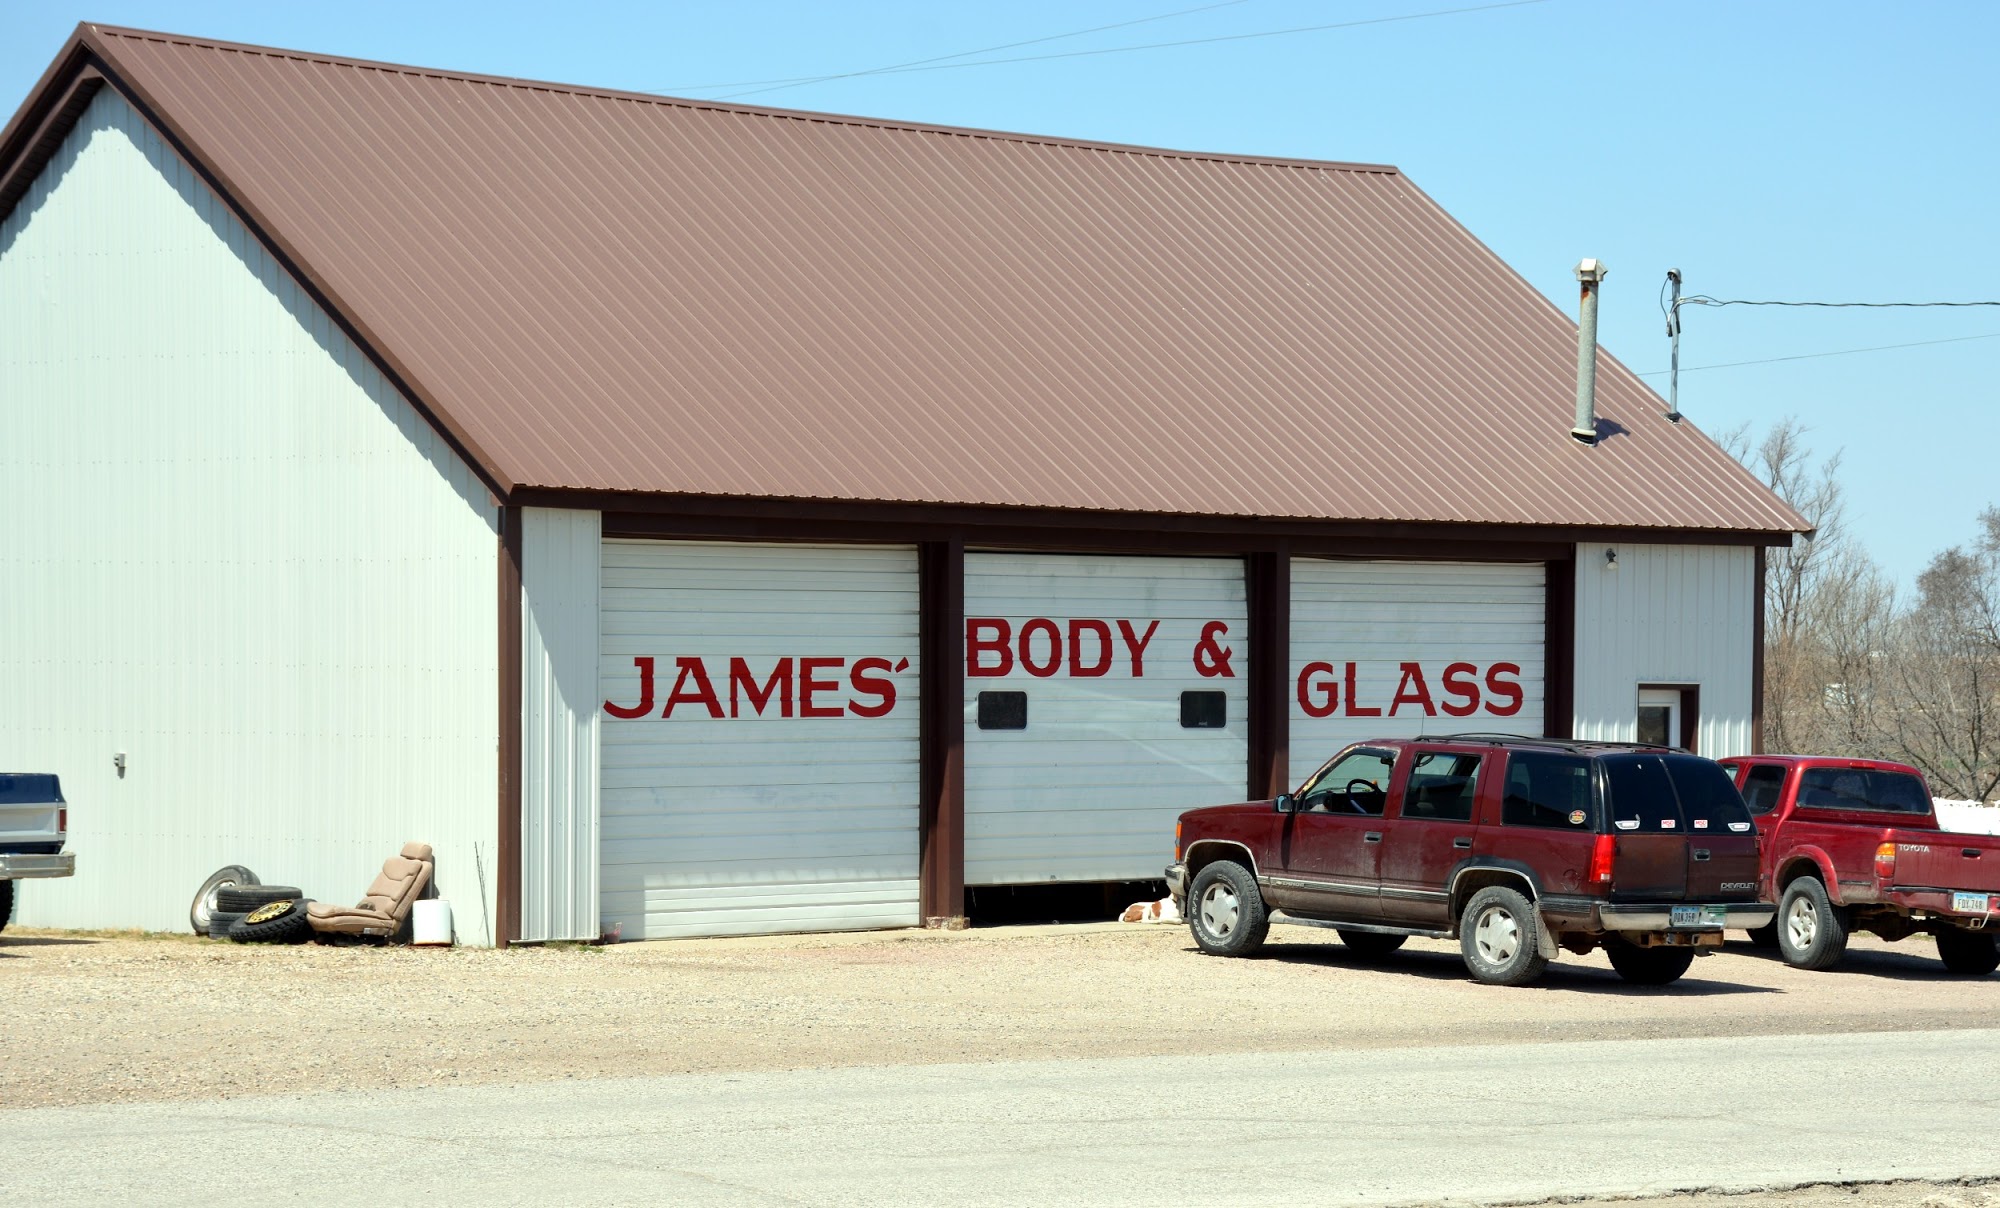 James Body & Glass